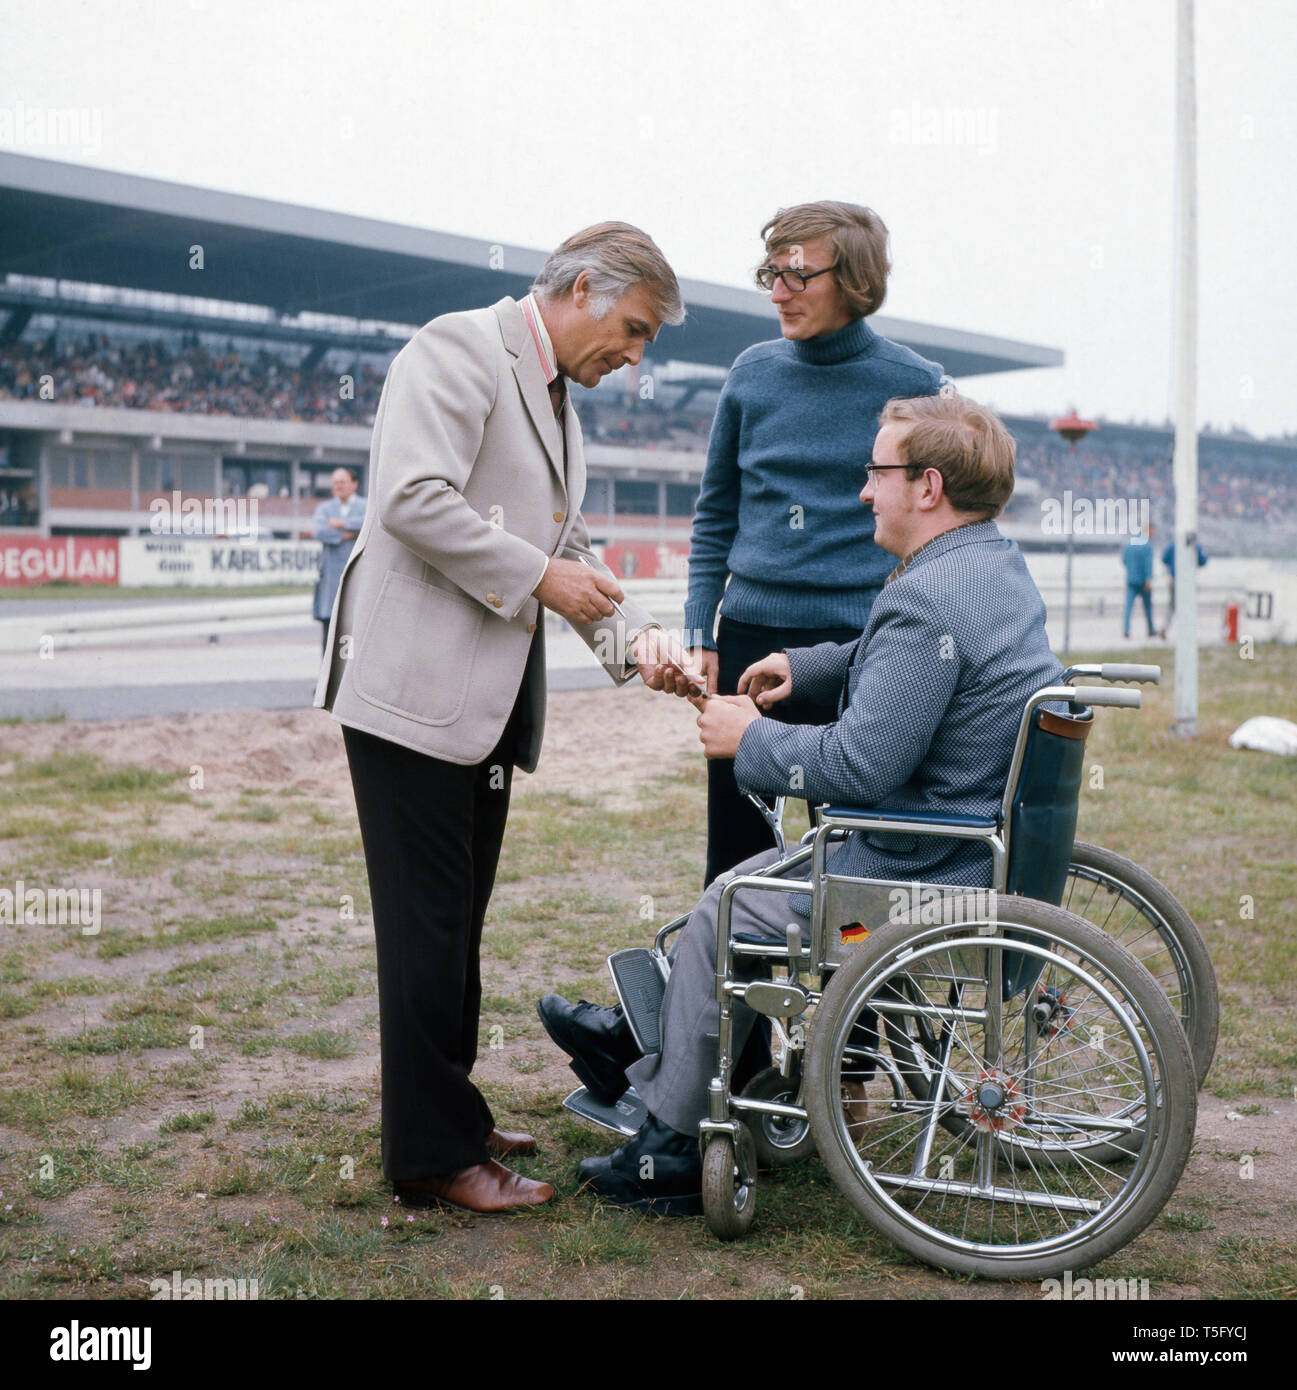 Fuchsberger begrüßt einen ventola Rollstuhl im abseits der Rennbahn, ca 1970. Fuchsberger accoglie un ventilatore in una sedia a rotelle fuori pista, ca 1970 Foto Stock